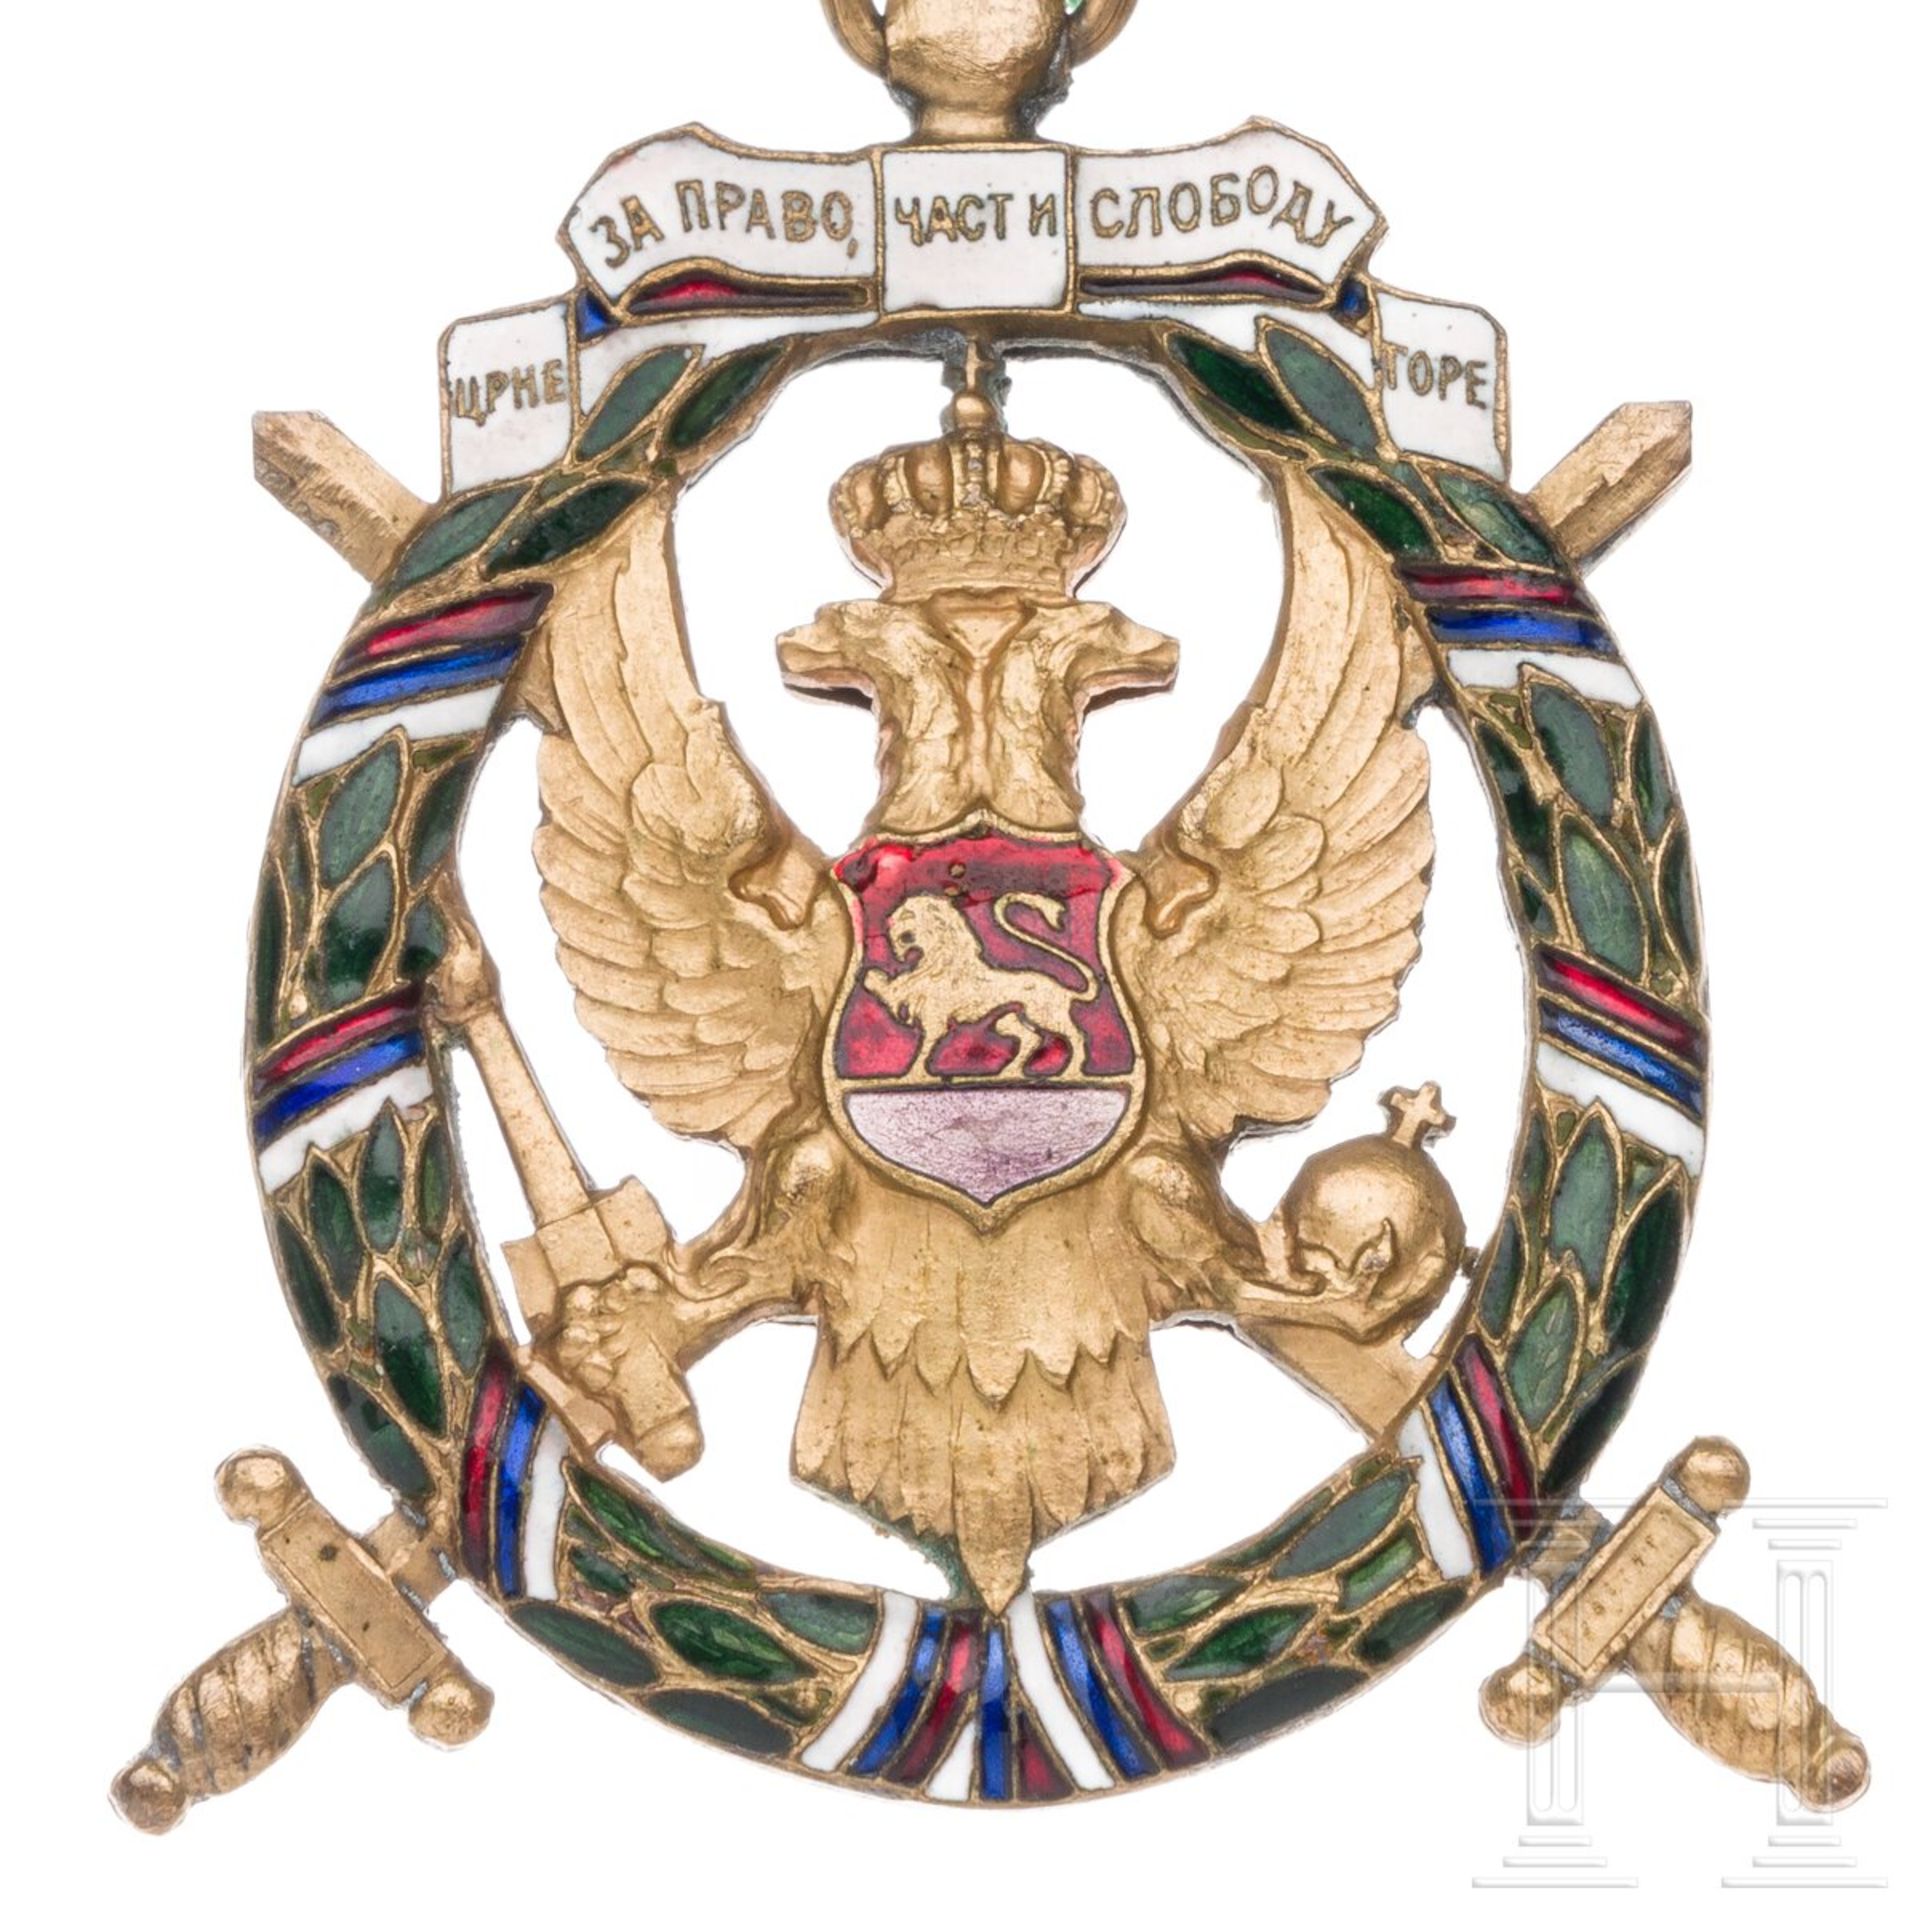 Medaille der grünen Truppen oder "Orden der Freiheit Montenegros", um 1920 - Image 4 of 4